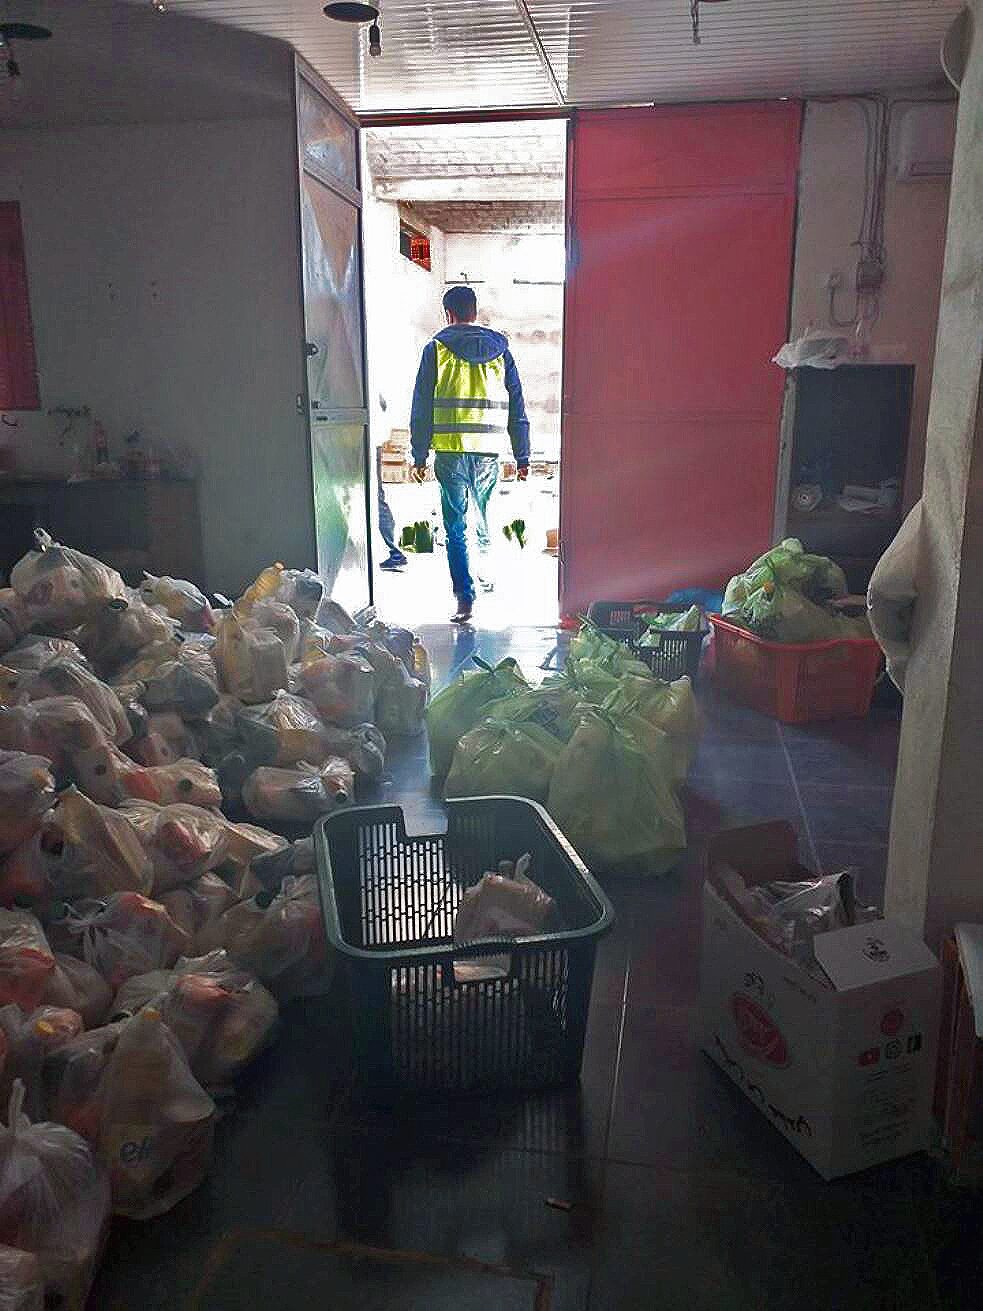 صورة لغرفة ممتلئة بأكياس طعام بلاستيكية ، ورجل يدخل من الباب.